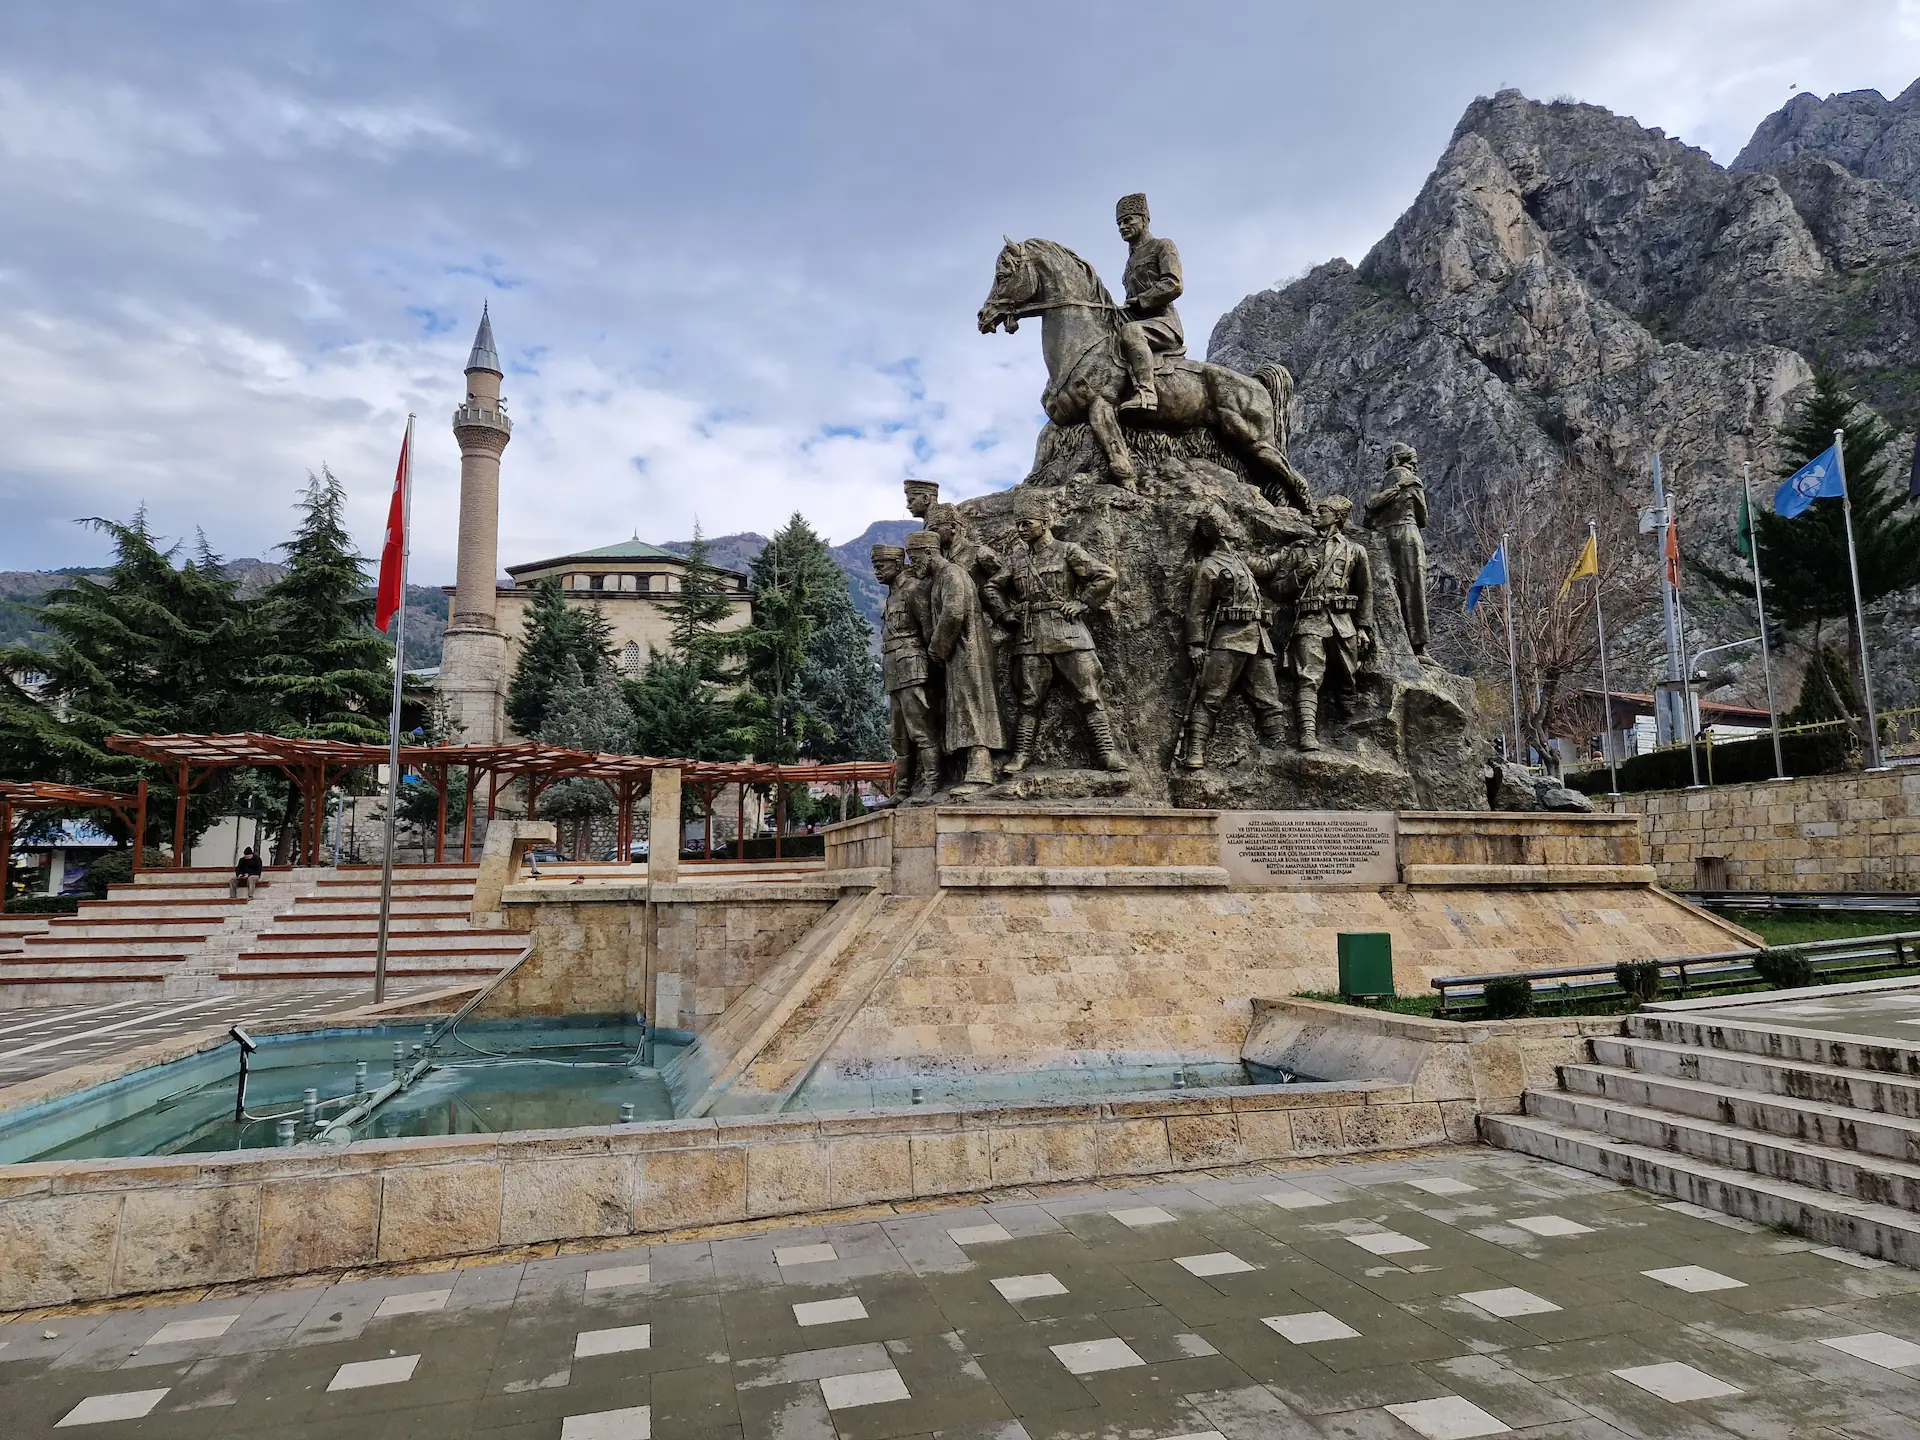 Statue de la place centrale d'Amasya. Plus loin, la mosquée. En fond, les montagnes.